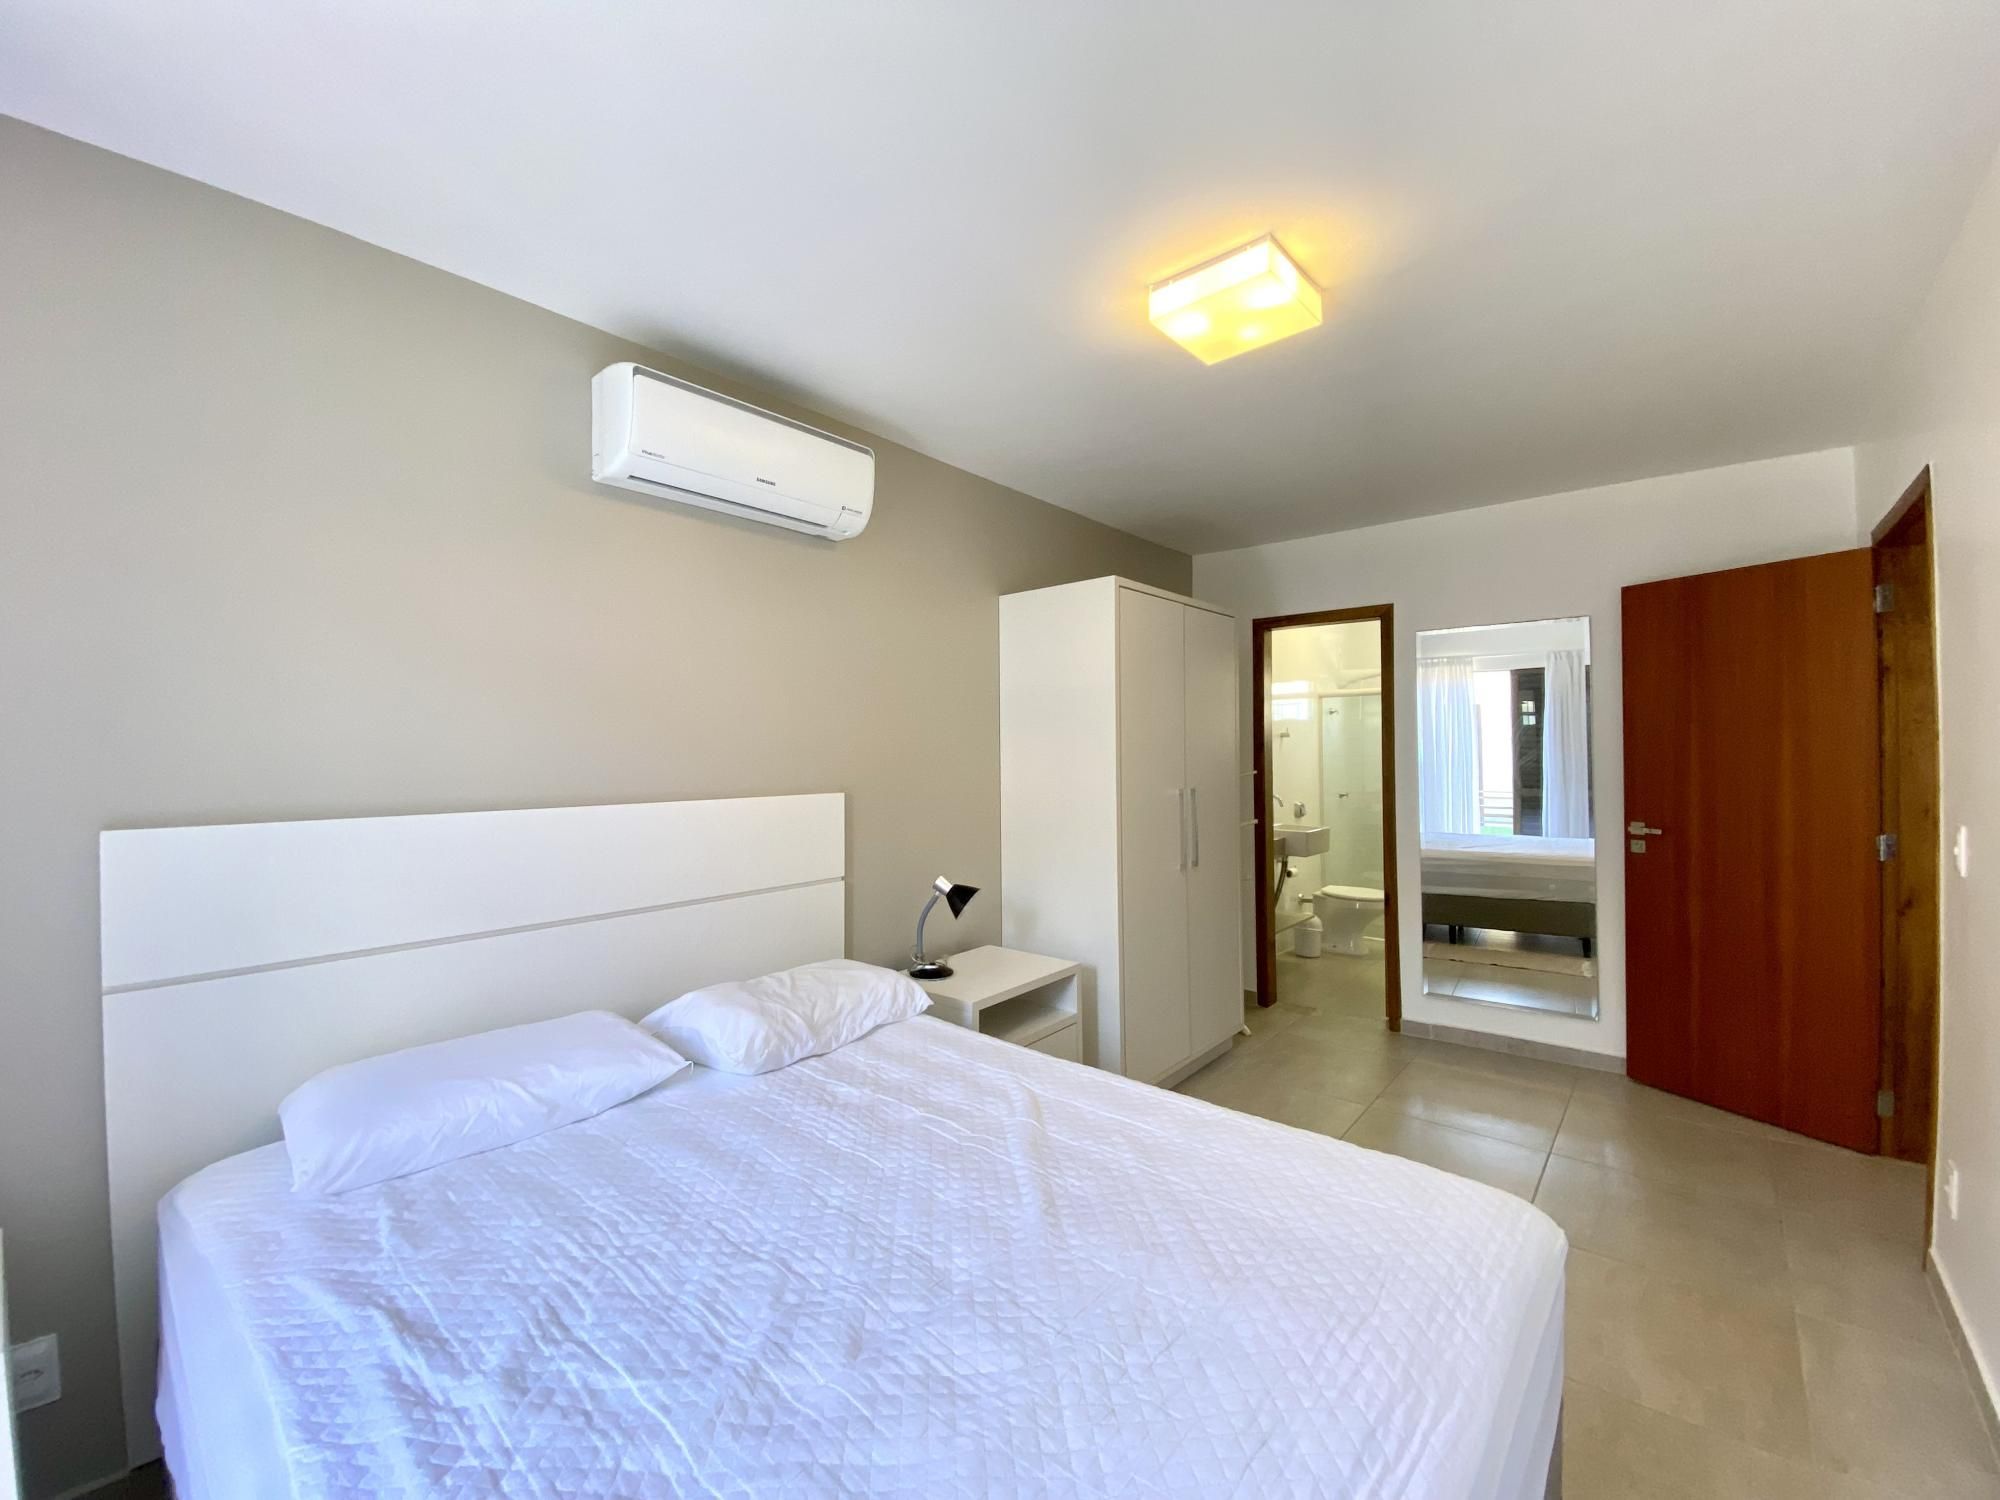 Apartamento com 3 Dormitórios para alugar, 99 m² valor à combinar